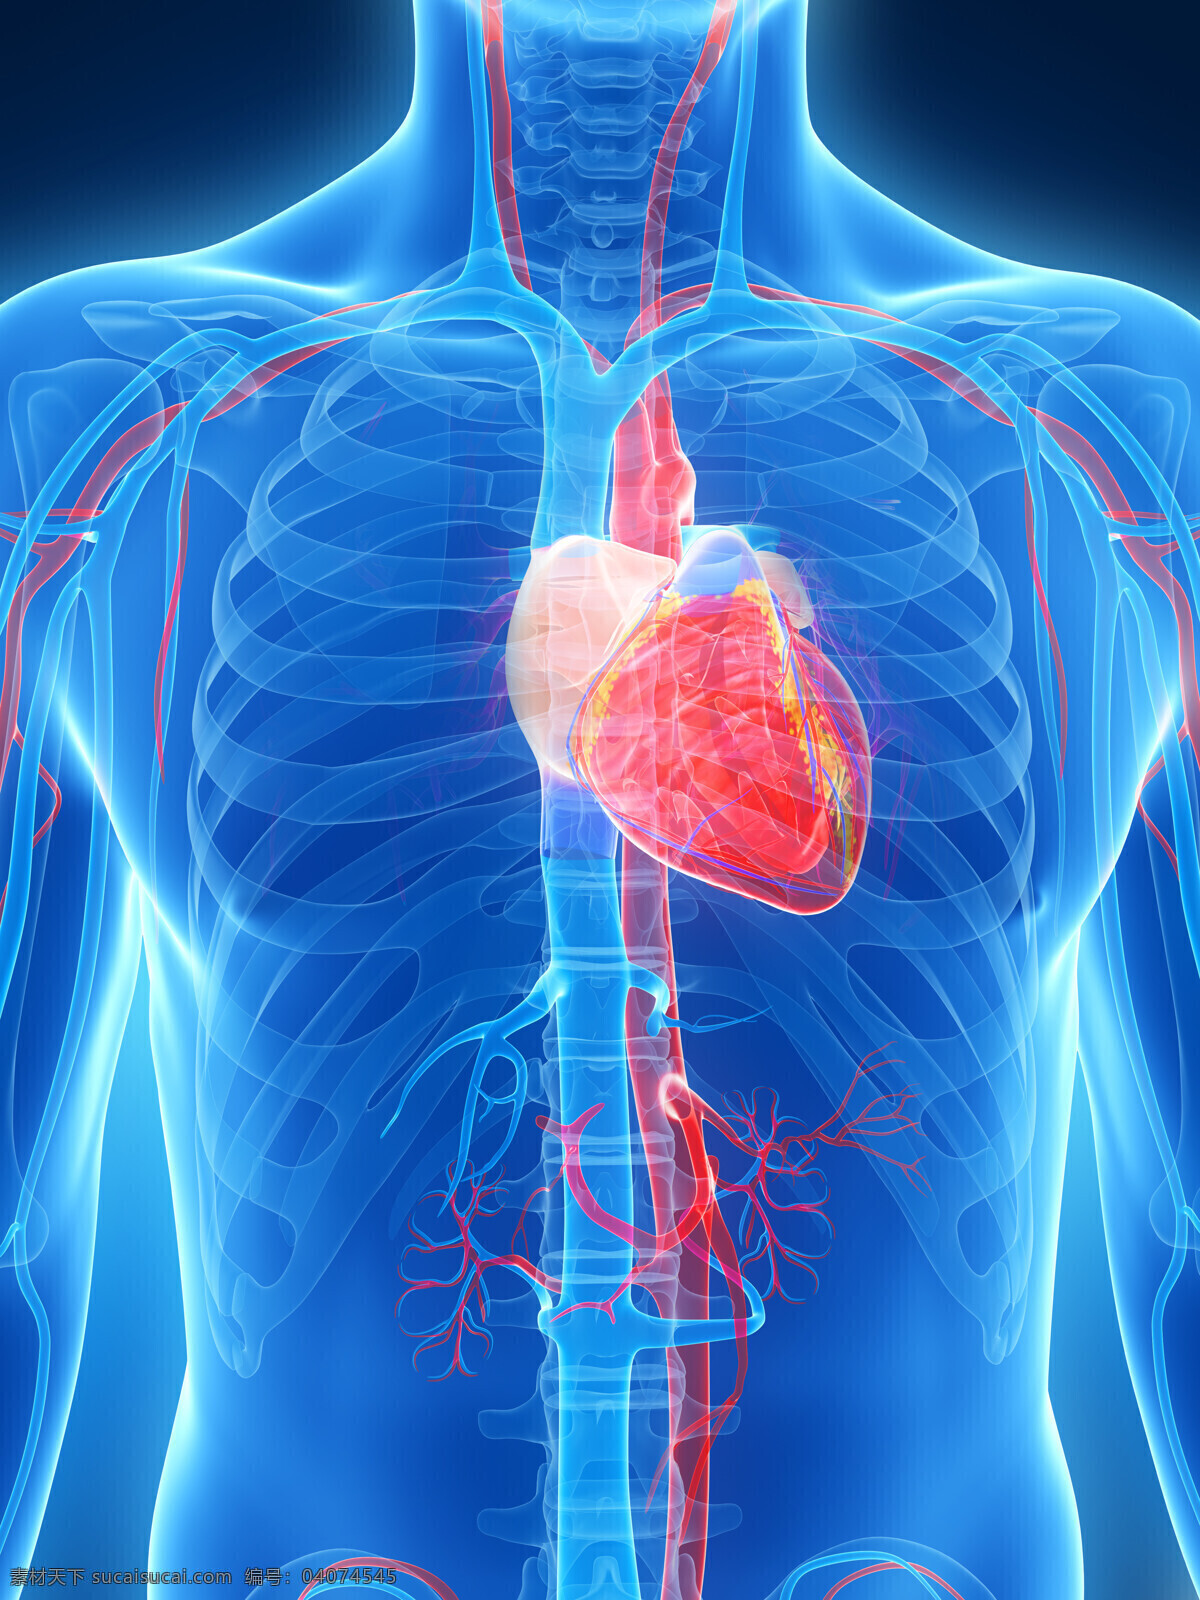 人体 心脏 骨骼 心脏器官 人体器官 人体骨骼 骨骼结构 医学科技 医疗科技 人体结构 ct 人体器官图 人物图片